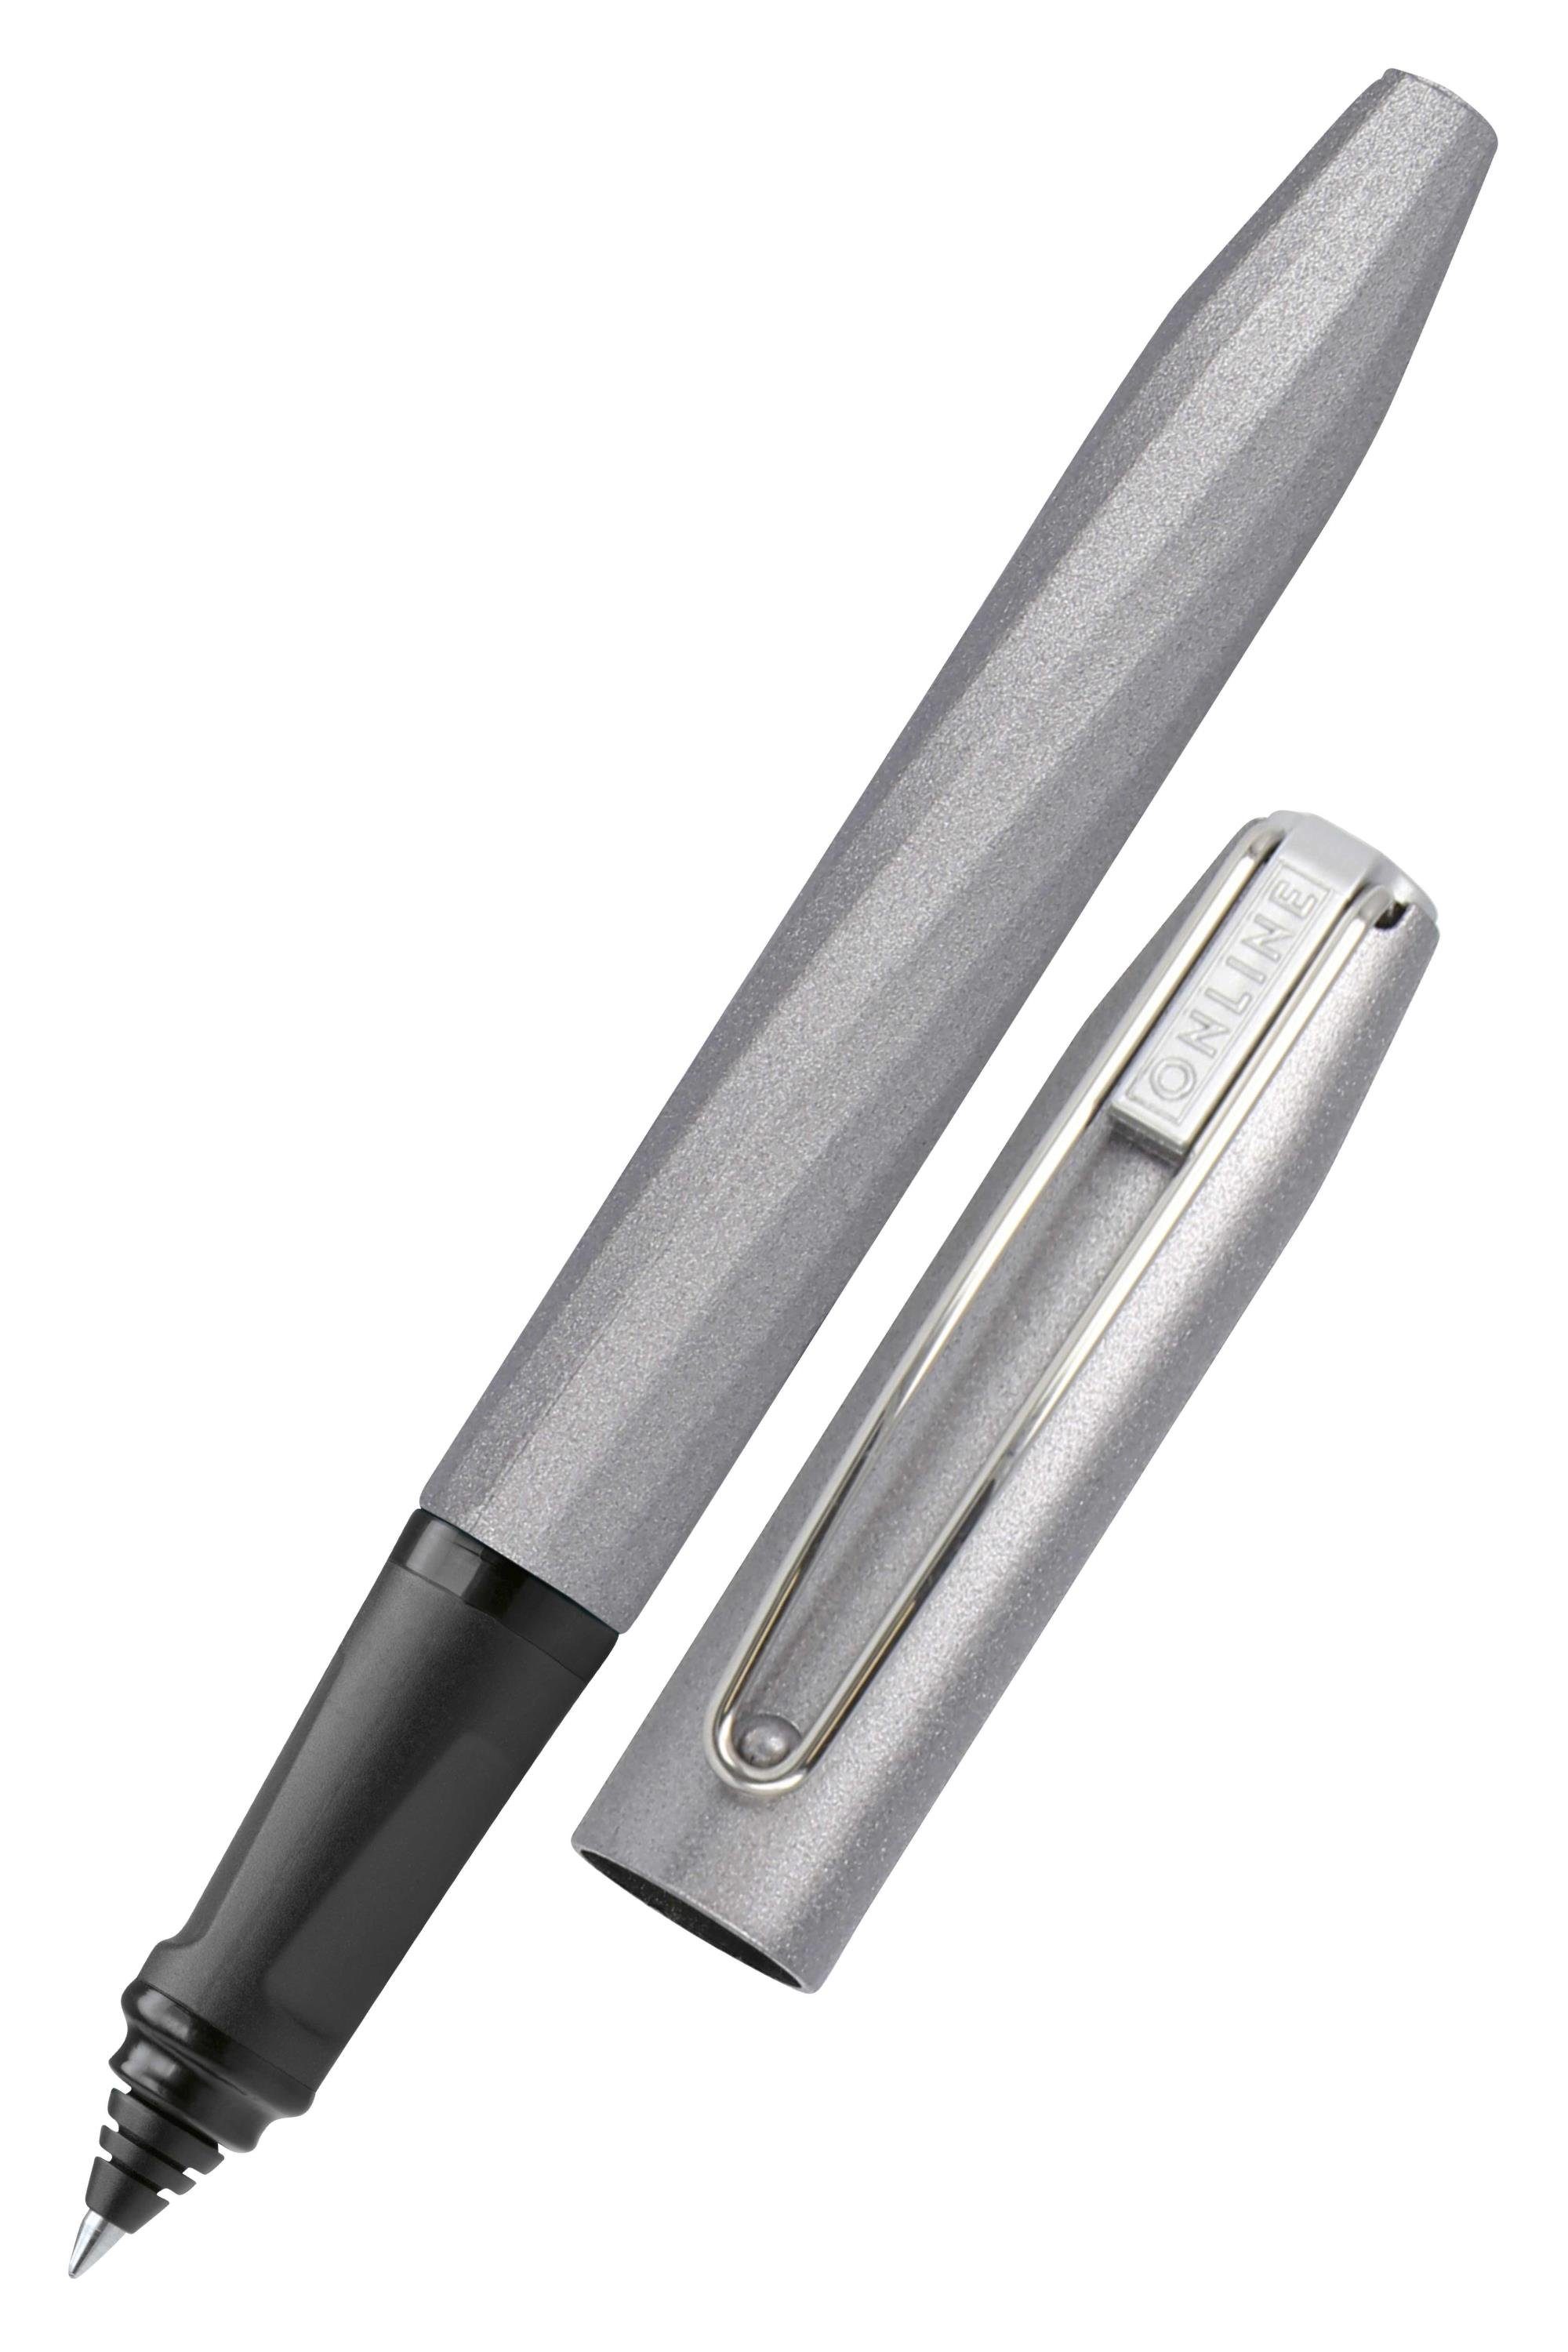 Online Pen Tintenroller Slope, ergonomisch, ideal für die Schule, inkl. Tintenpatrone Grau